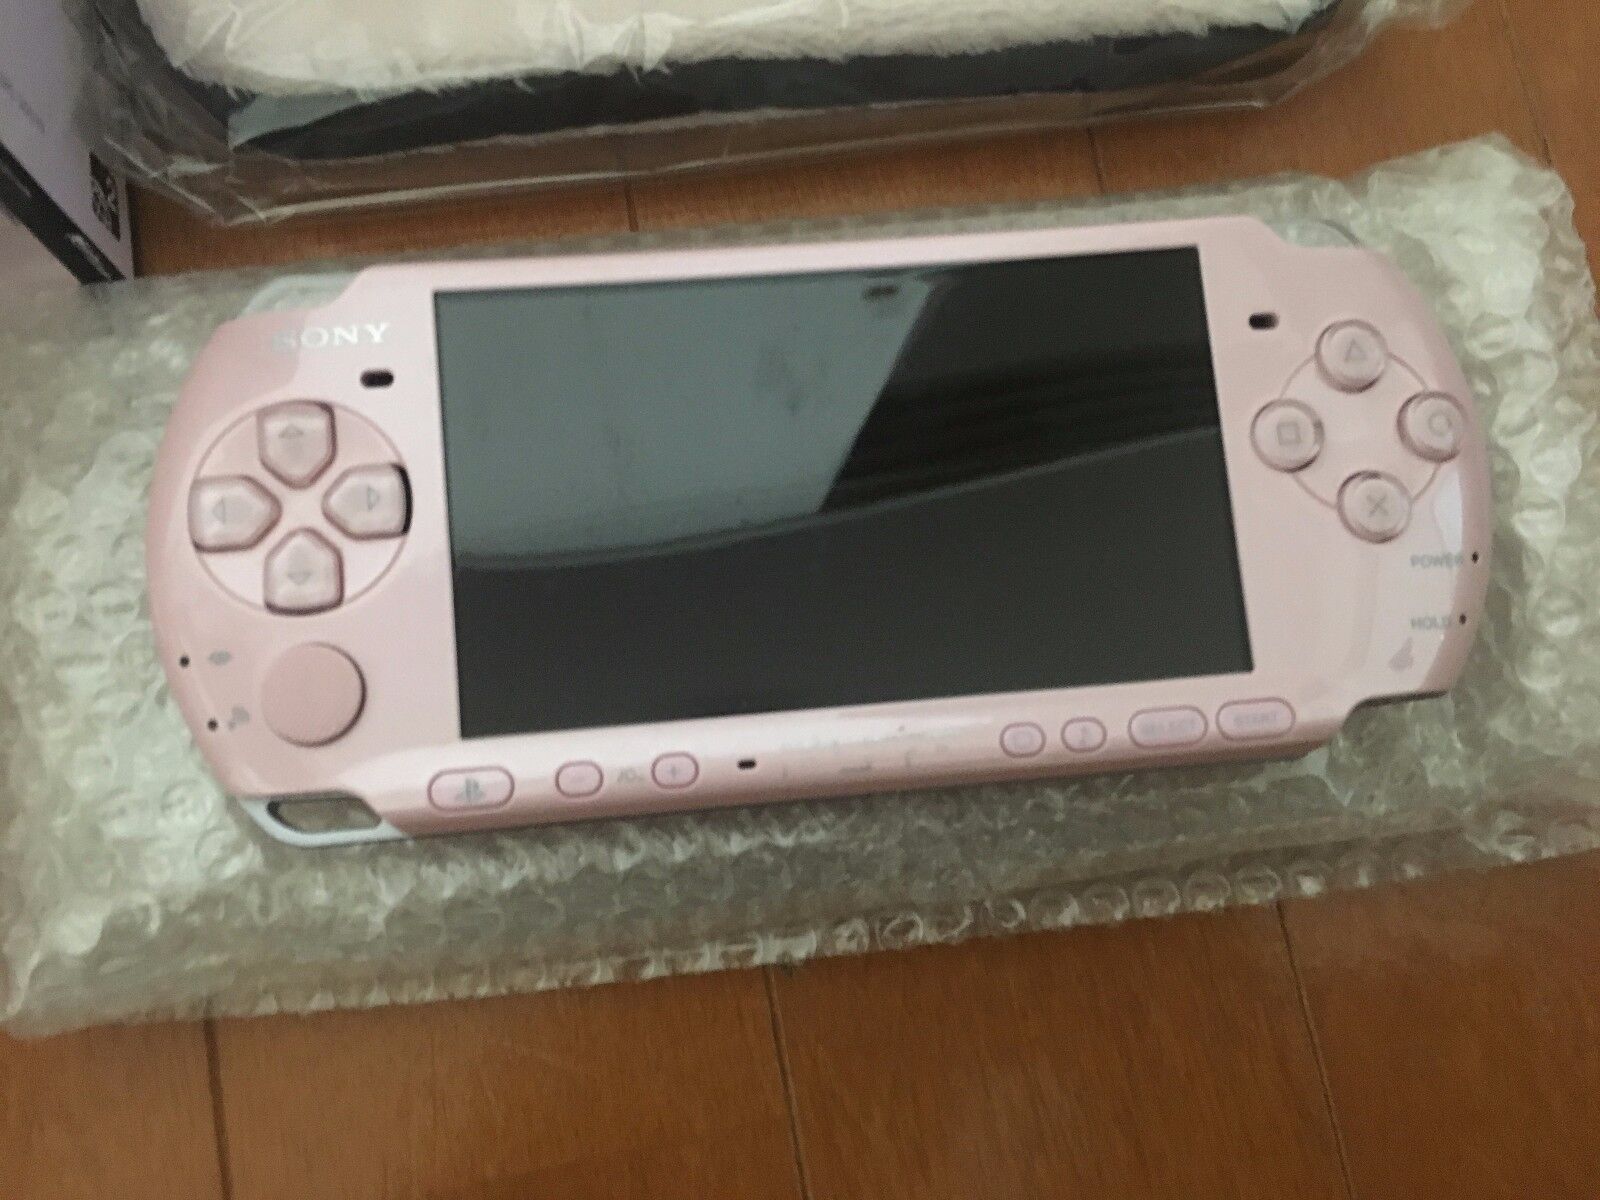 市場 SONY PlayStationPortable PSPJ-30019 携帯用ゲーム本体